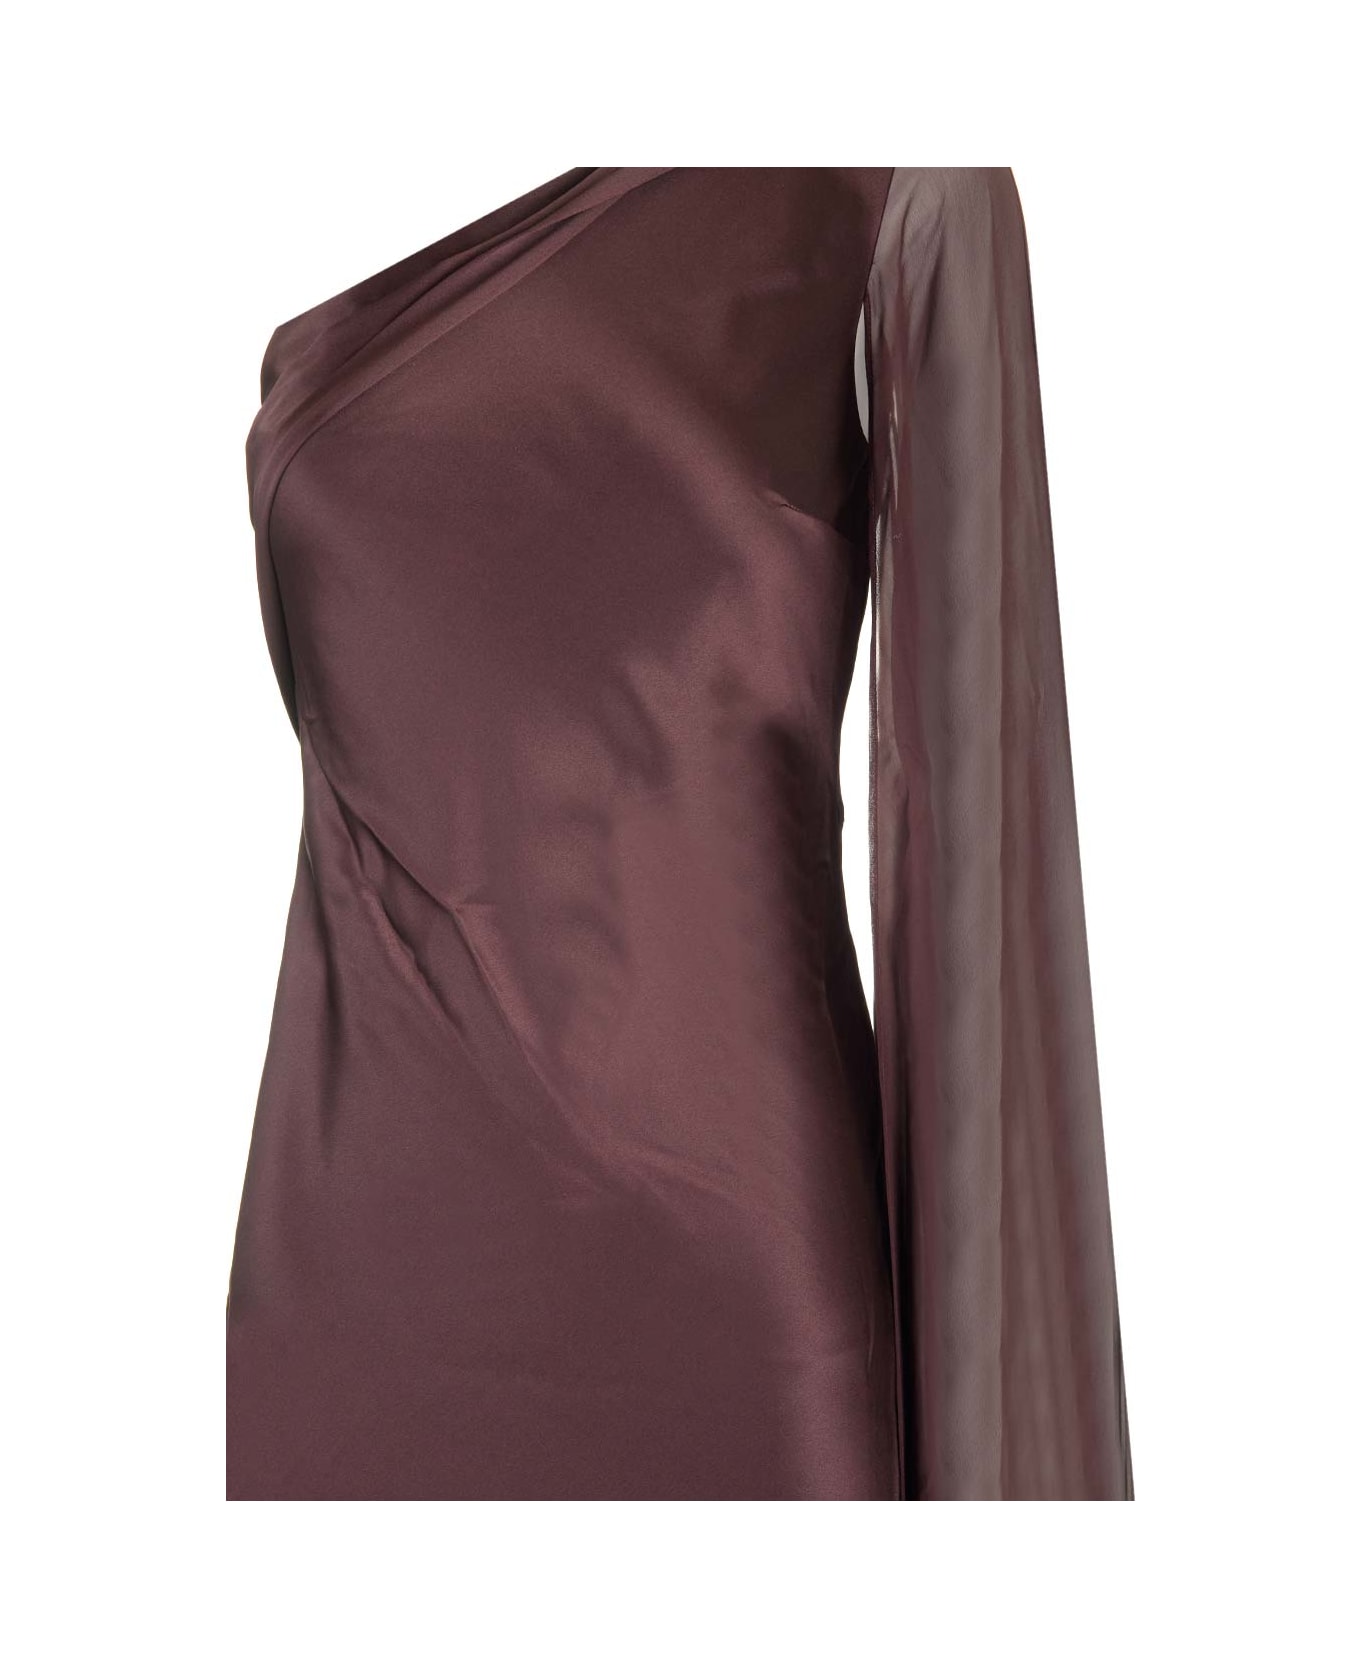 Roland Mouret Silk Gown Dress - Brown